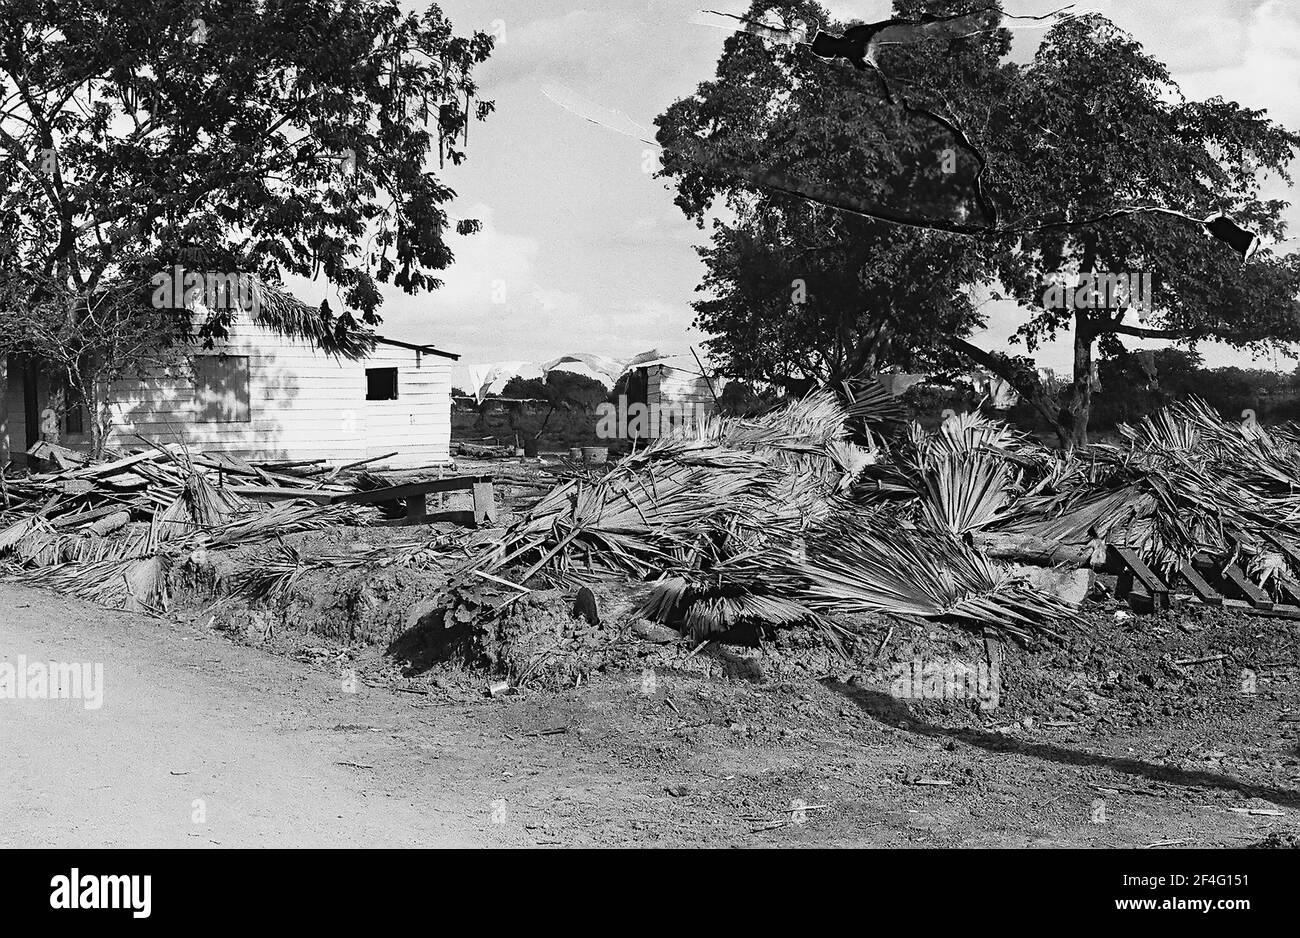 Ouragan Flora endommagé, Oriente, Cuba, province de Holguin, 1963. De la collection de photographies Deena Stryker. () Banque D'Images